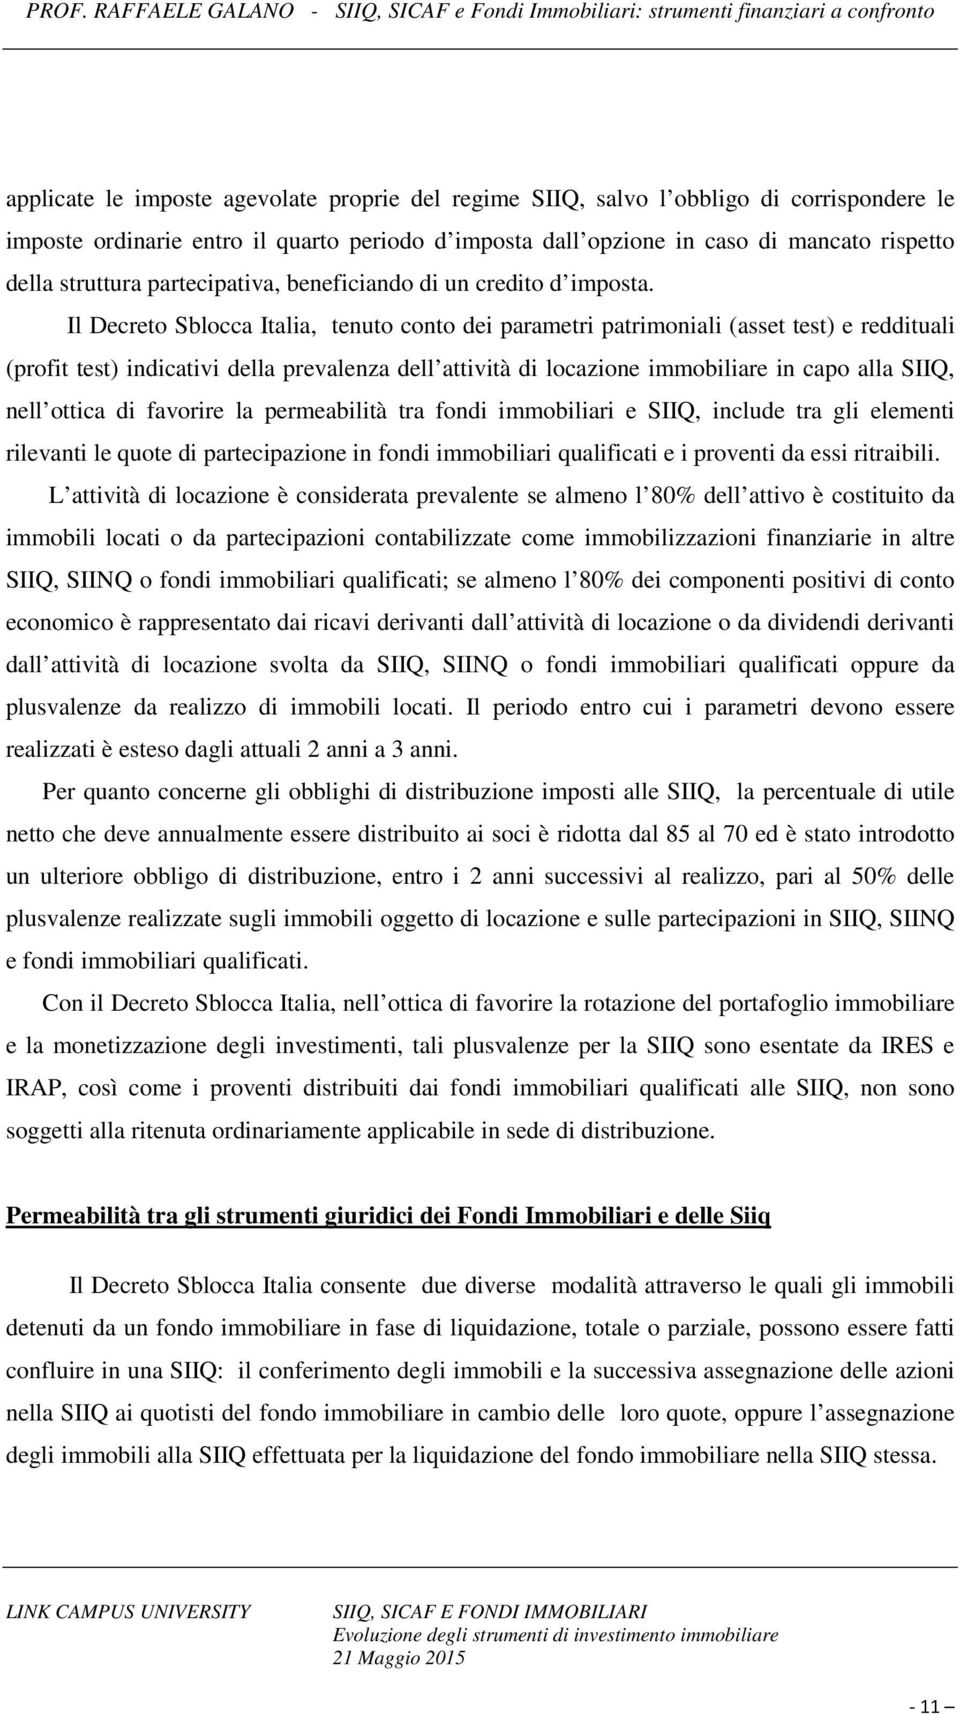 Il Decreto Sblocca Italia, tenuto conto dei parametri patrimoniali (asset test) e reddituali (profit test) indicativi della prevalenza dell attività di locazione immobiliare in capo alla SIIQ, nell